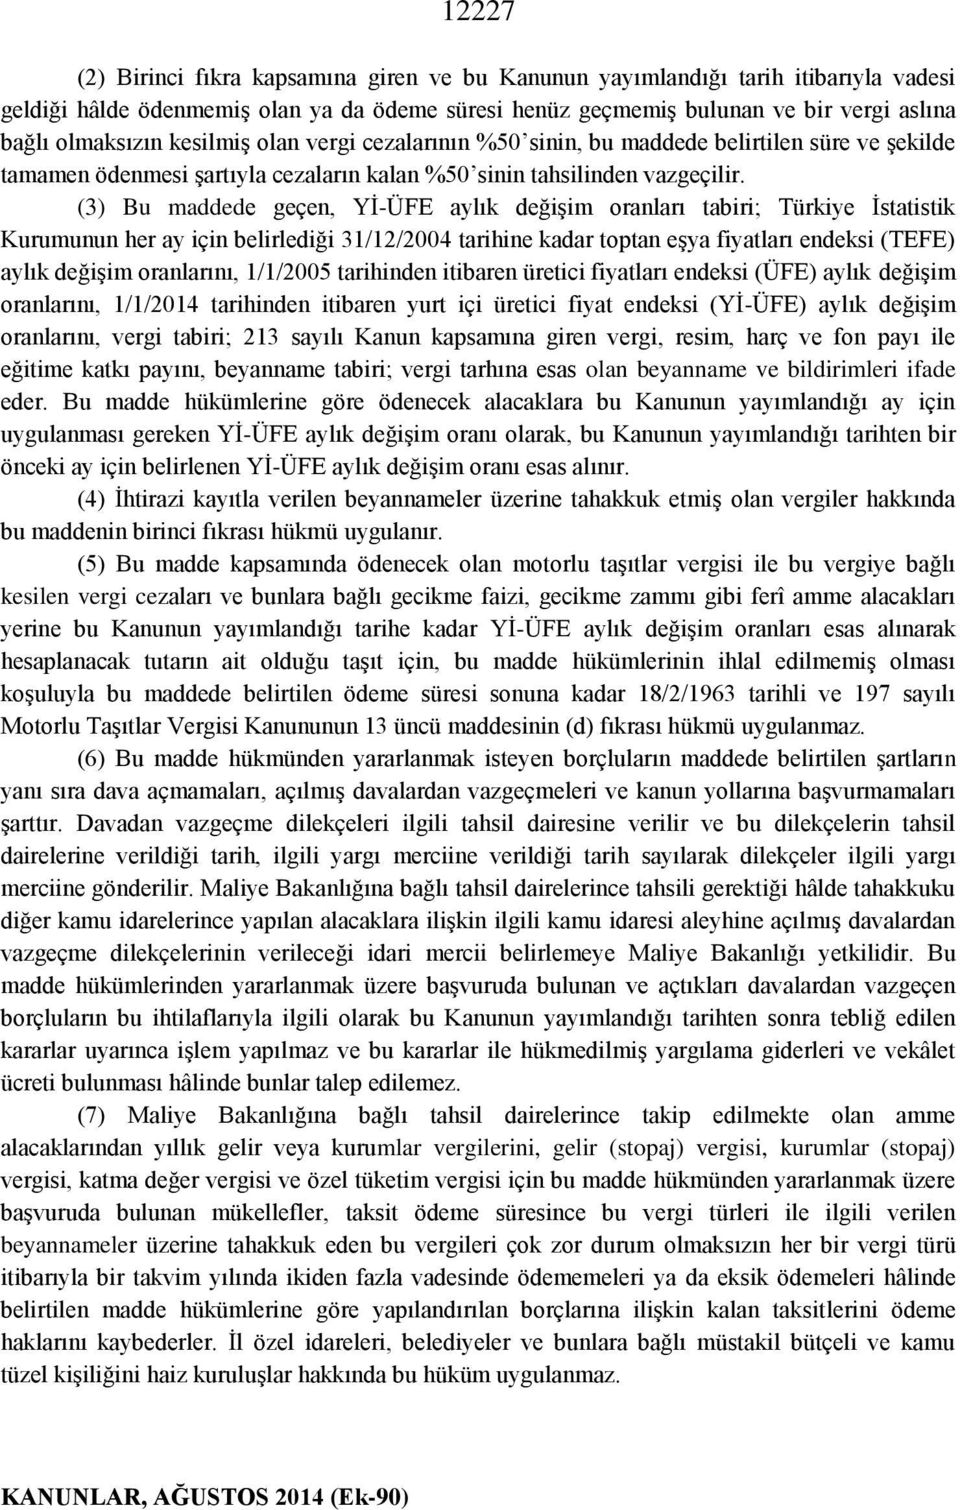 (3) Bu maddede geçen, Yİ-ÜFE aylık değişim oranları tabiri; Türkiye İstatistik Kurumunun her ay için belirlediği 31/12/2004 tarihine kadar toptan eşya fiyatları endeksi (TEFE) aylık değişim